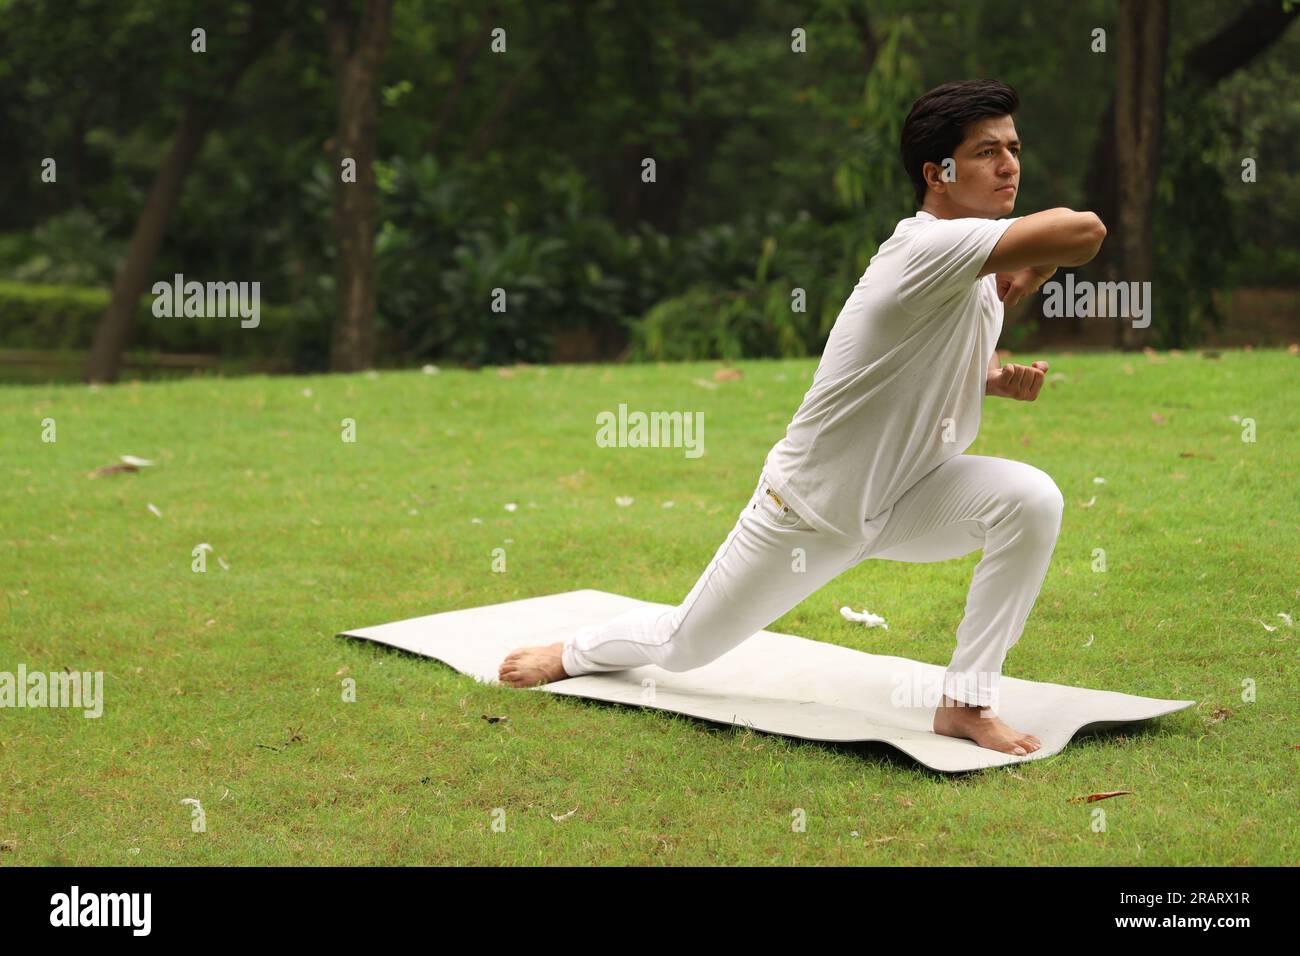 Junger Junge beim Sport und Yoga posieren in grüner, ruhiger Umgebung am frühen Morgen im Park, um einen gesunden Lebensstil zu erhalten. Internationaler Yoga-Tag. Stockfoto